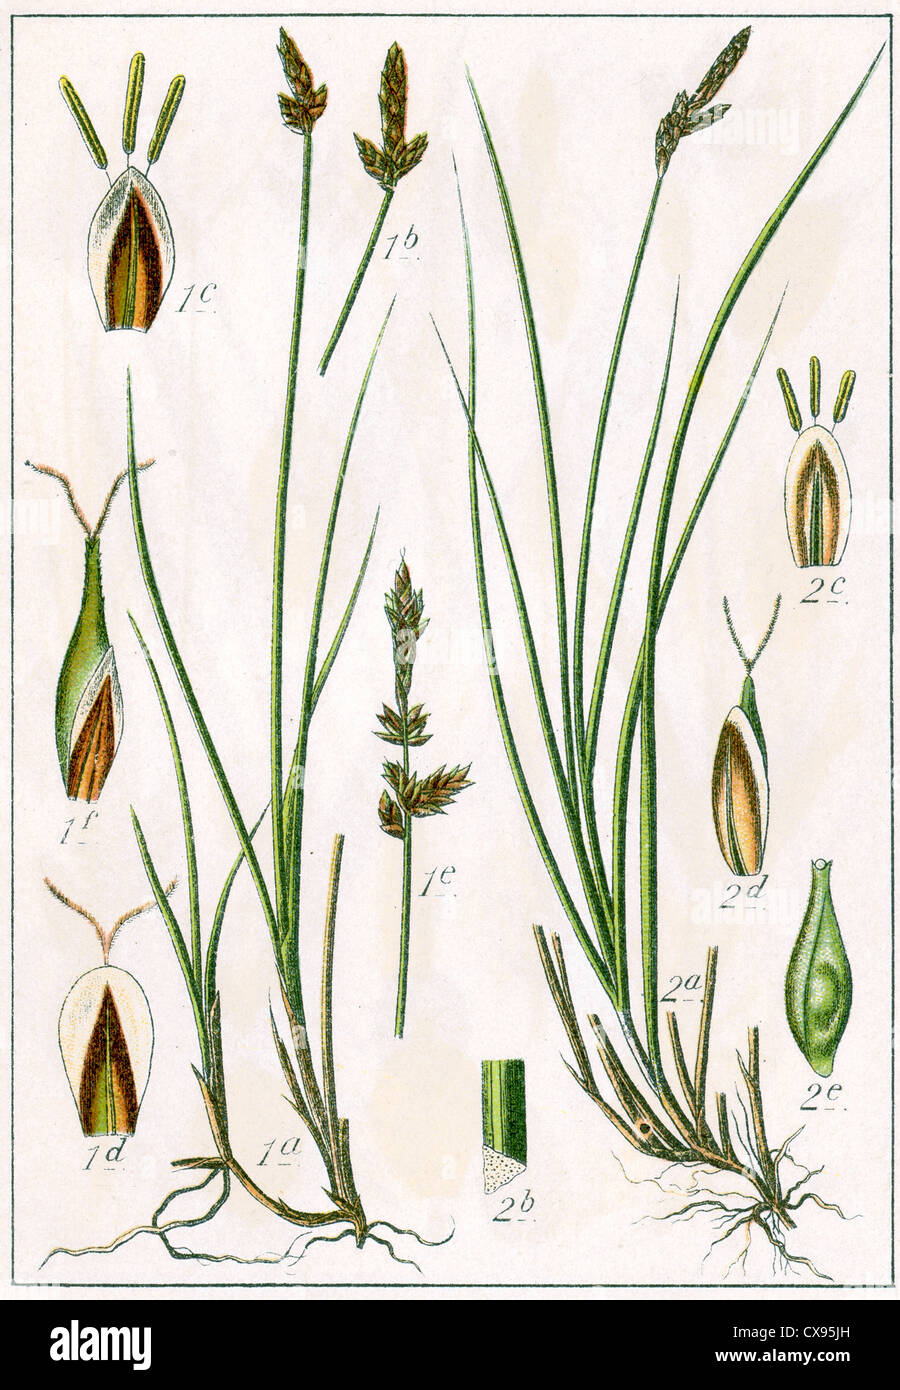 Carex Gaudiniana - Carex microstachya Stock Photo